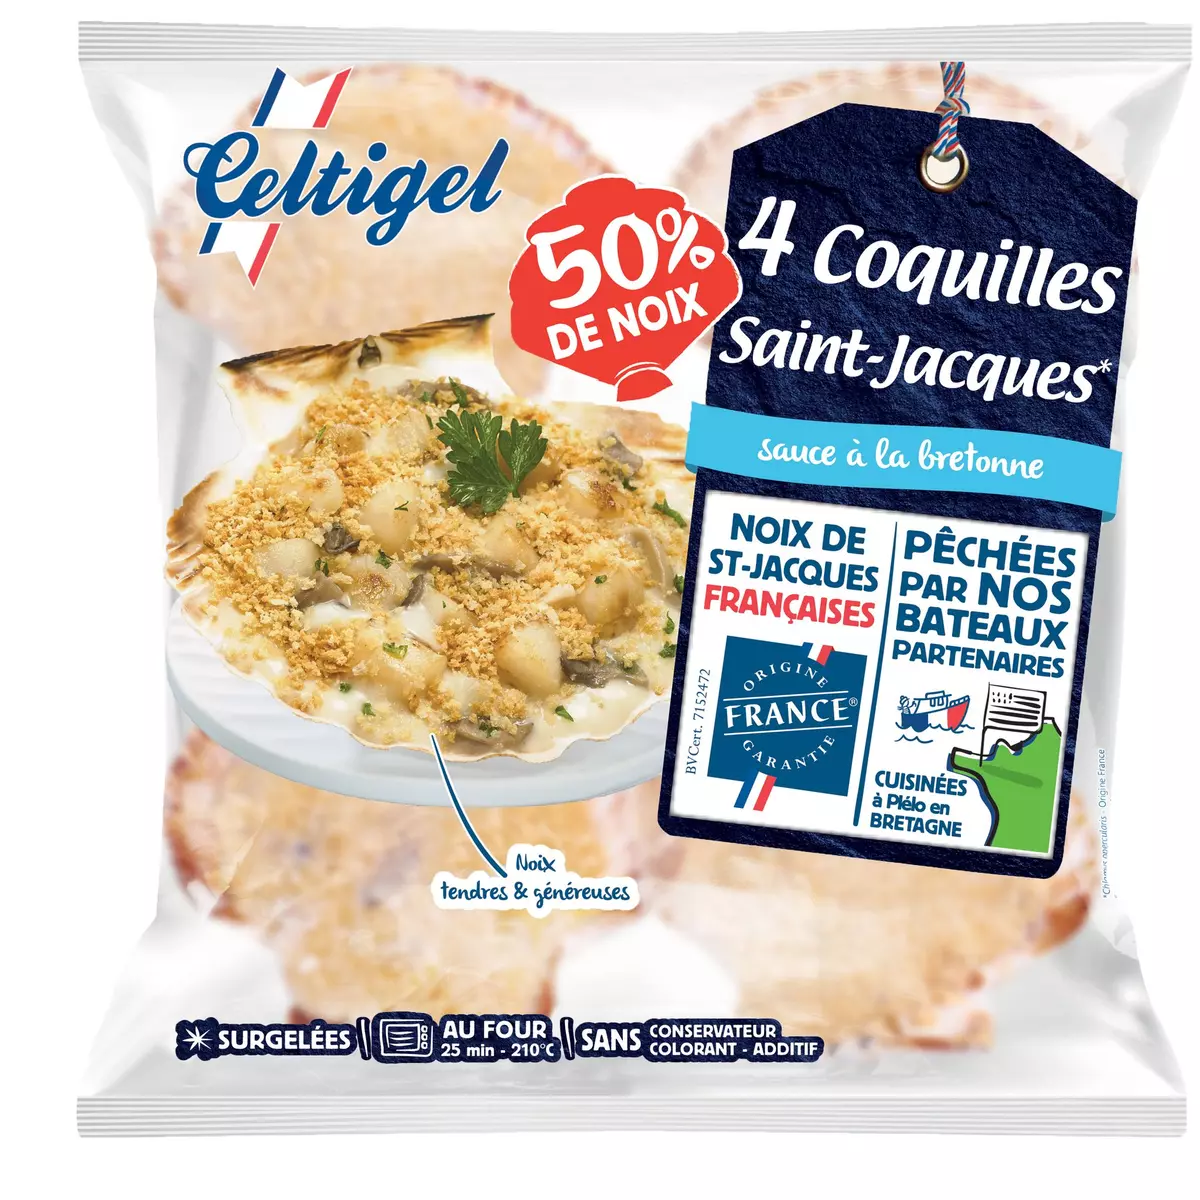 CELTIGEL Coquilles Saint-Jacques à la Bretonne 50% de noix 4 pièces 360g